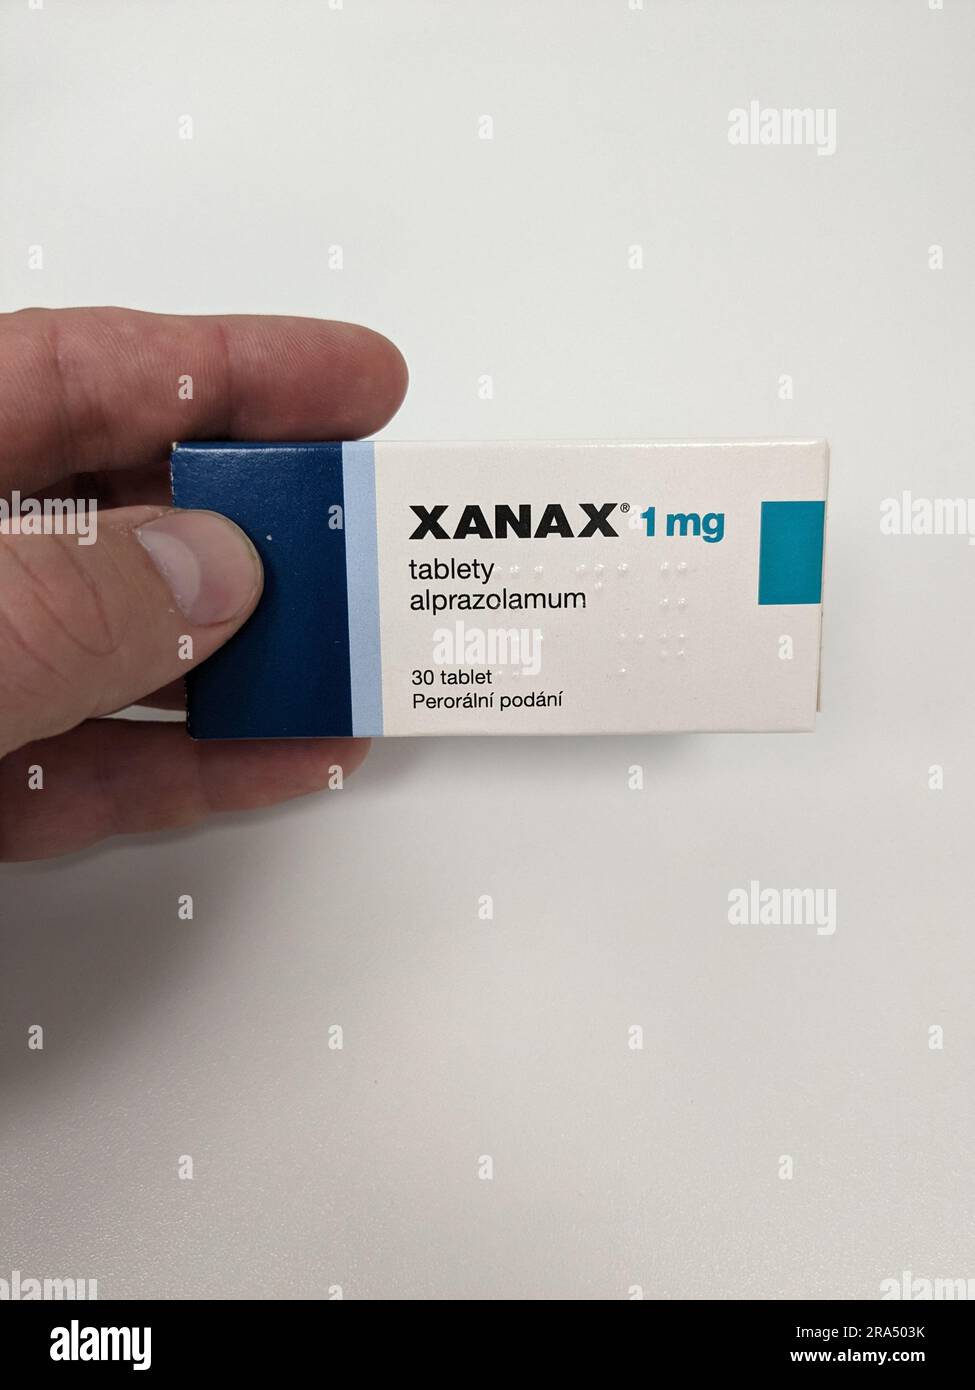 Pillole di Xanax con principio attivo Alprazolam, farmaci ansiolitici  anti-depressivi terapia, è popolare droga da abuso e ha valore di strada  Pfizer Foto stock - Alamy